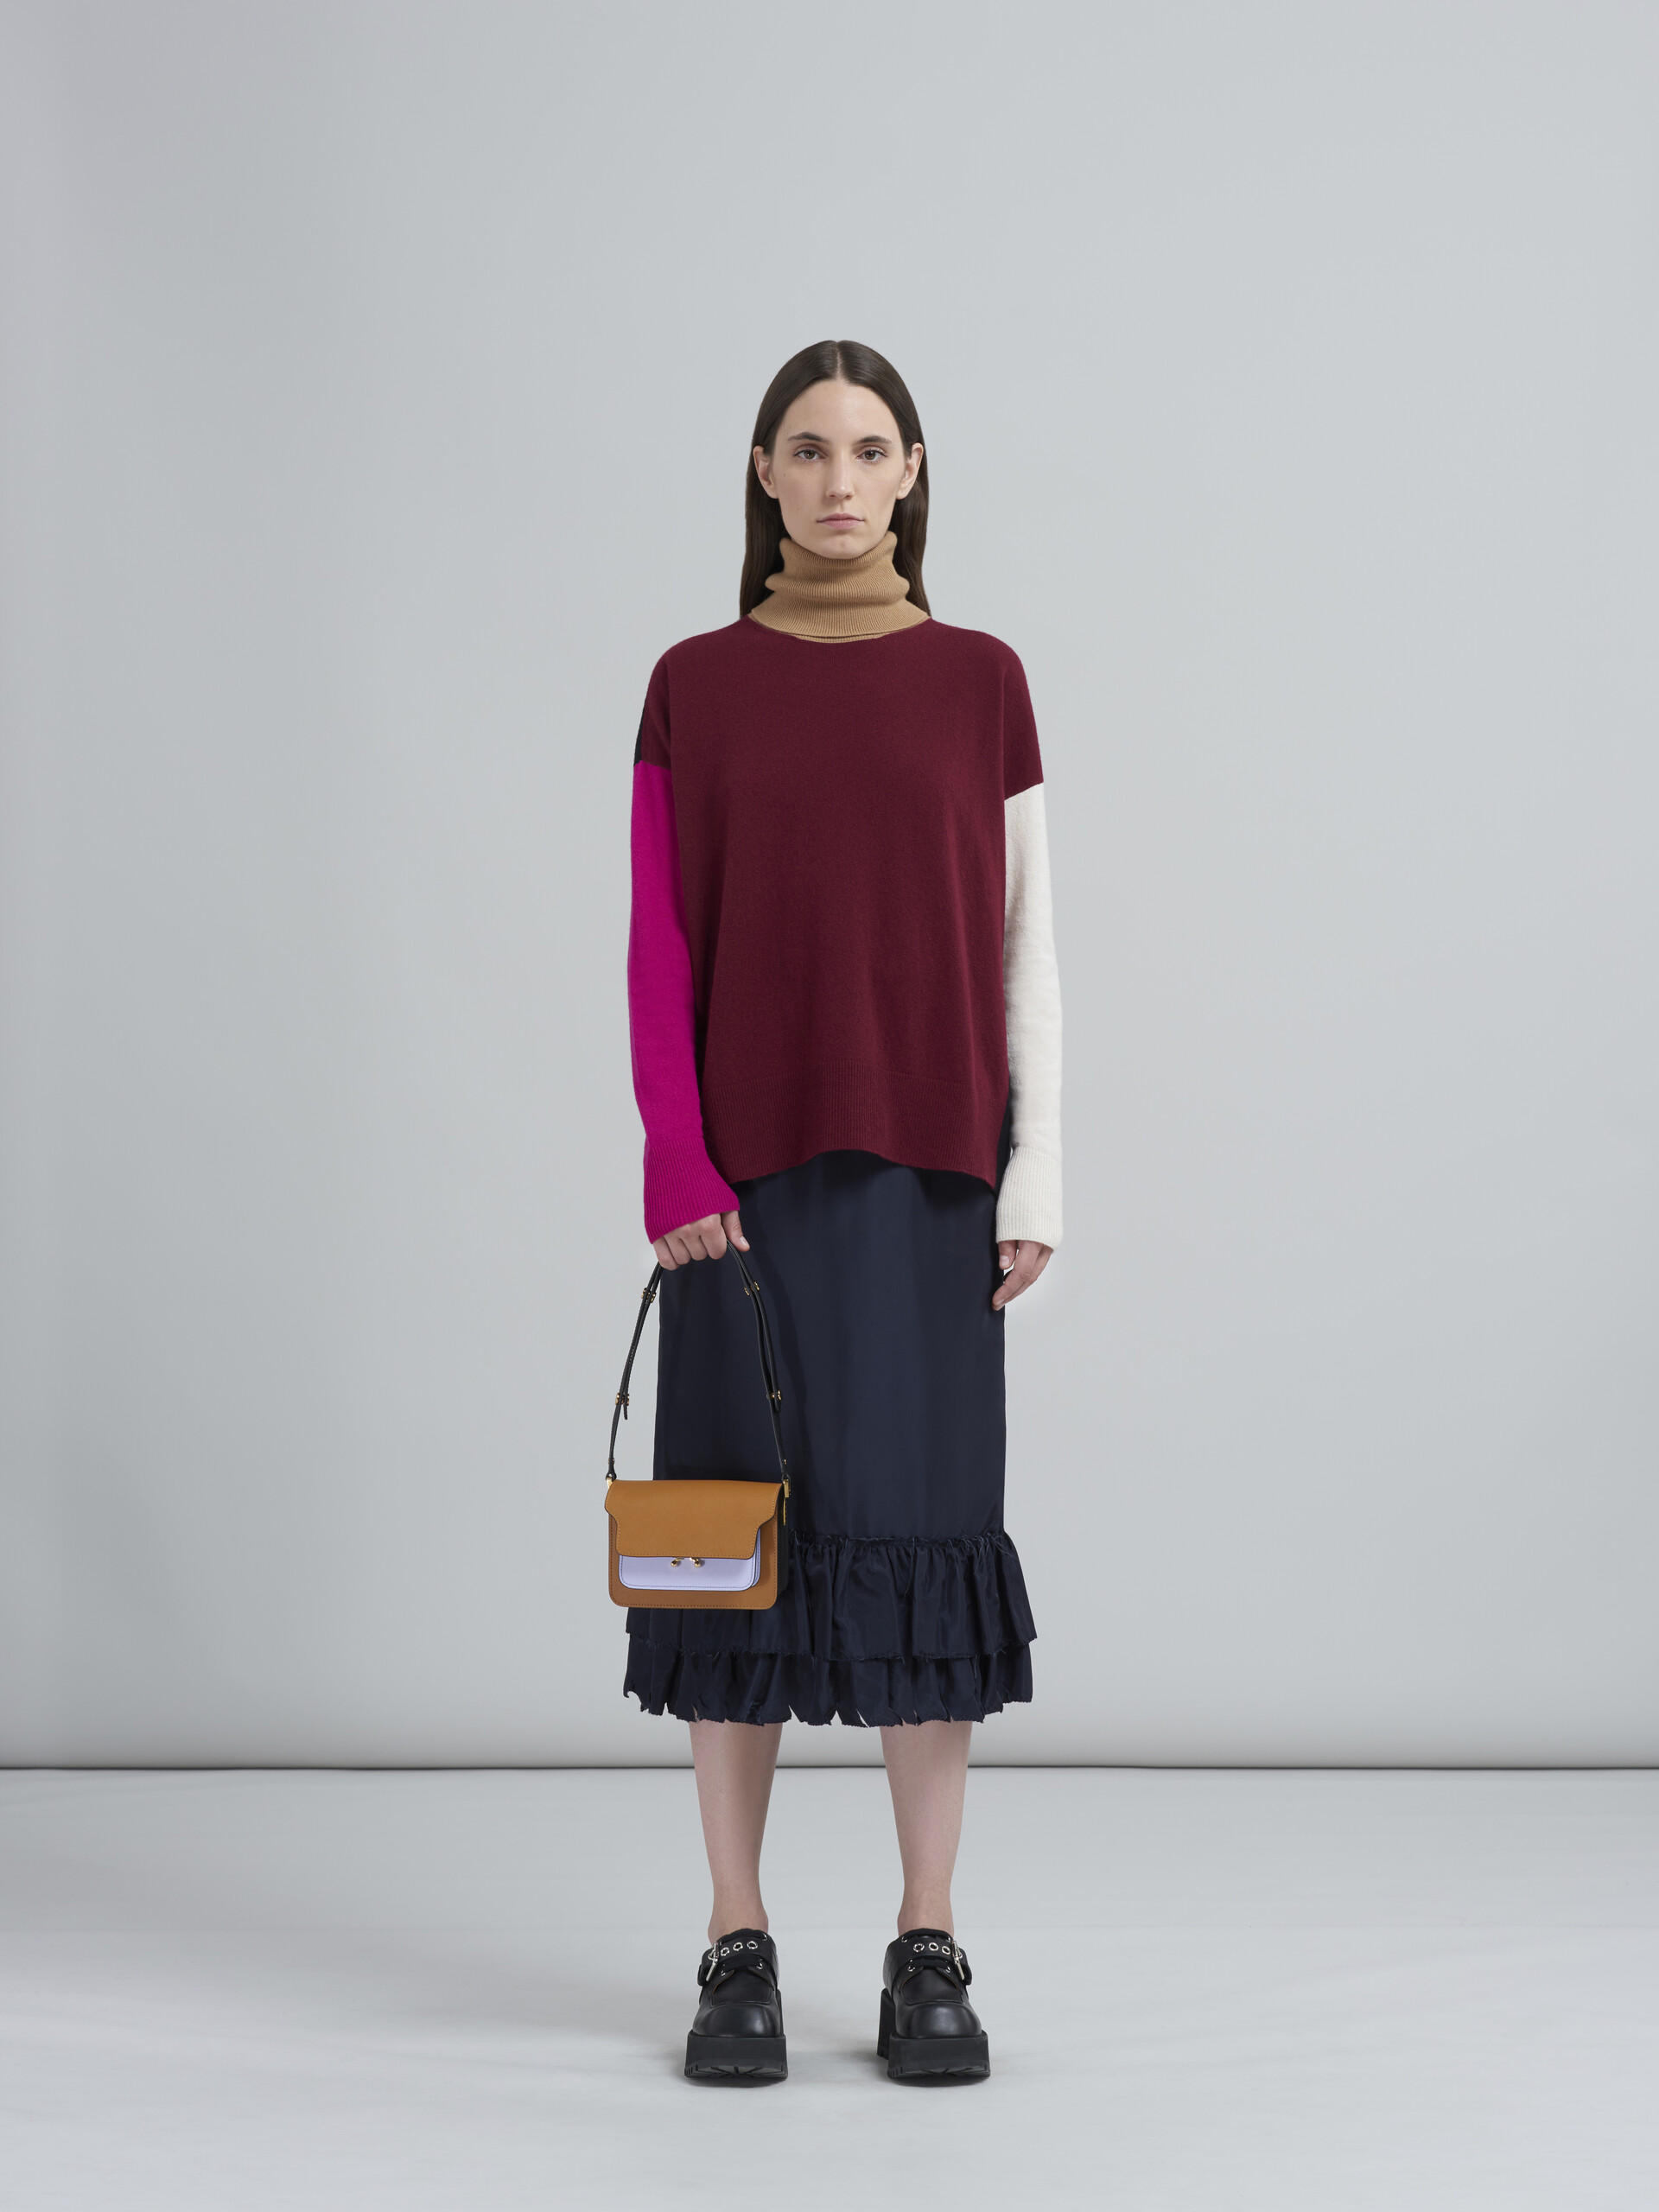 TRUNK bag mini in saffiano marrone lilla e nero - Borse a spalla - Image 2